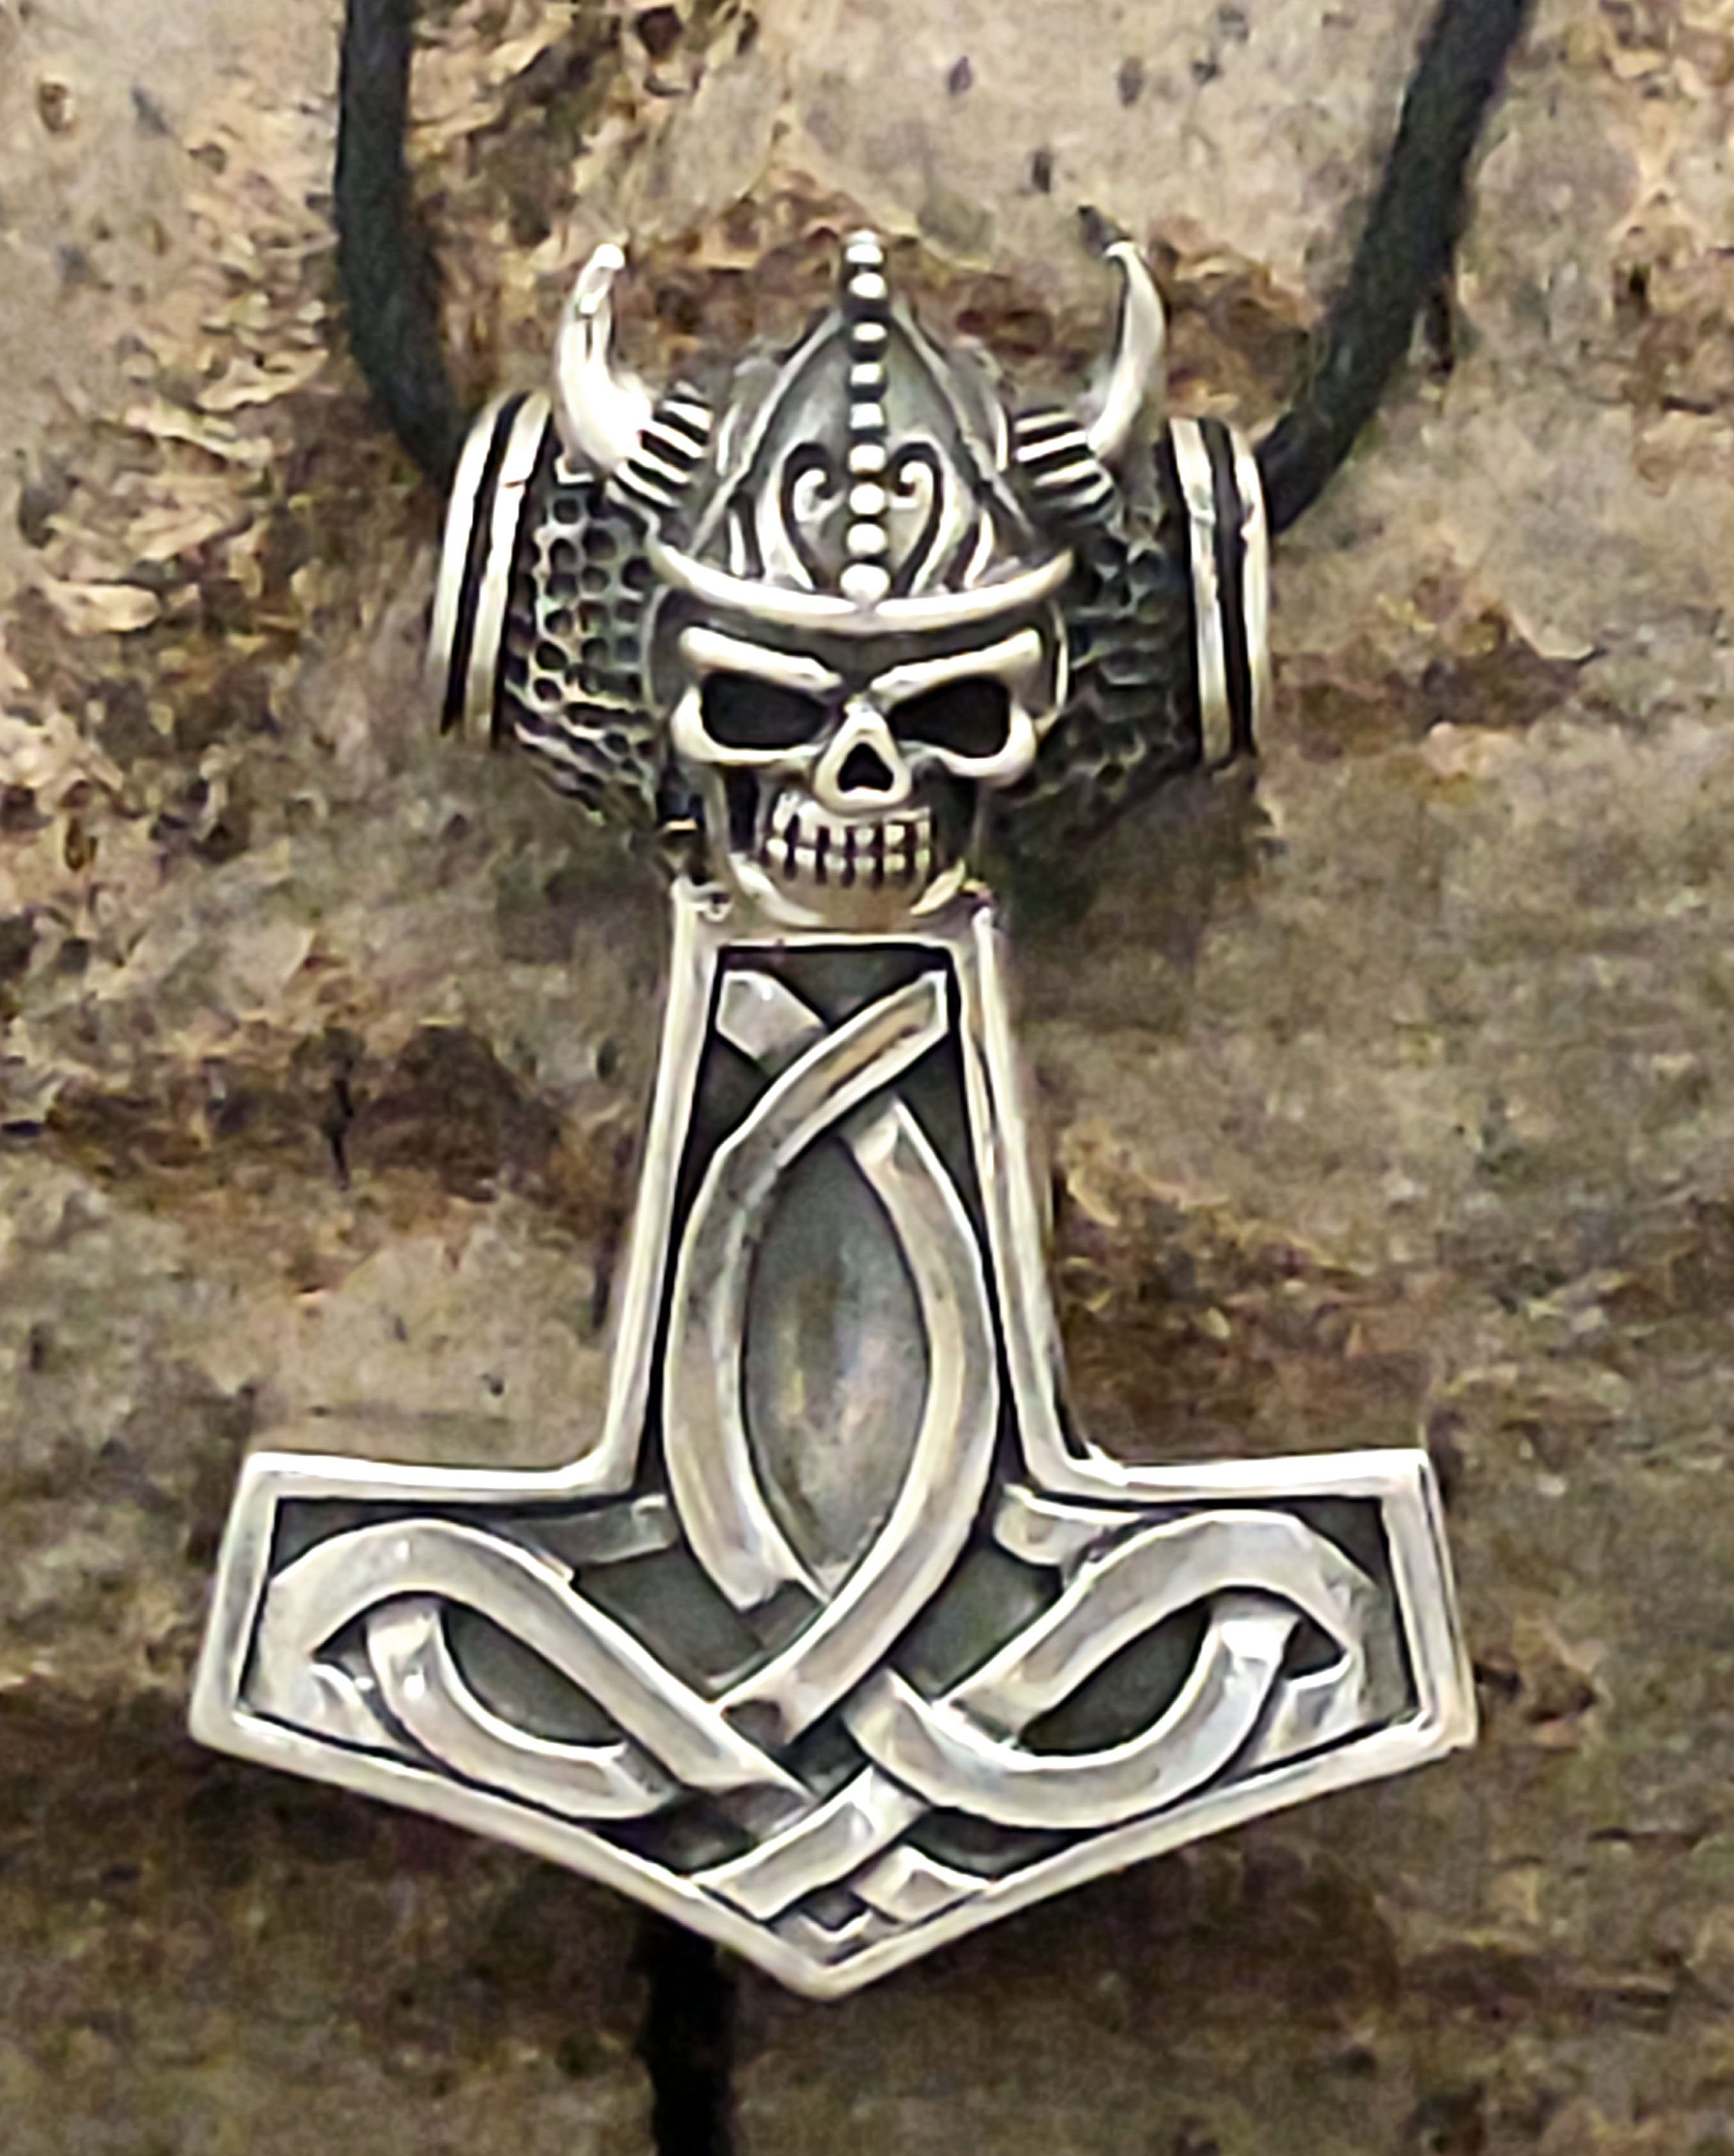 Kopf Leather Wikinger of Thorshammer Thorhammer Silber Helm Kiss 925 Kettenanhänger